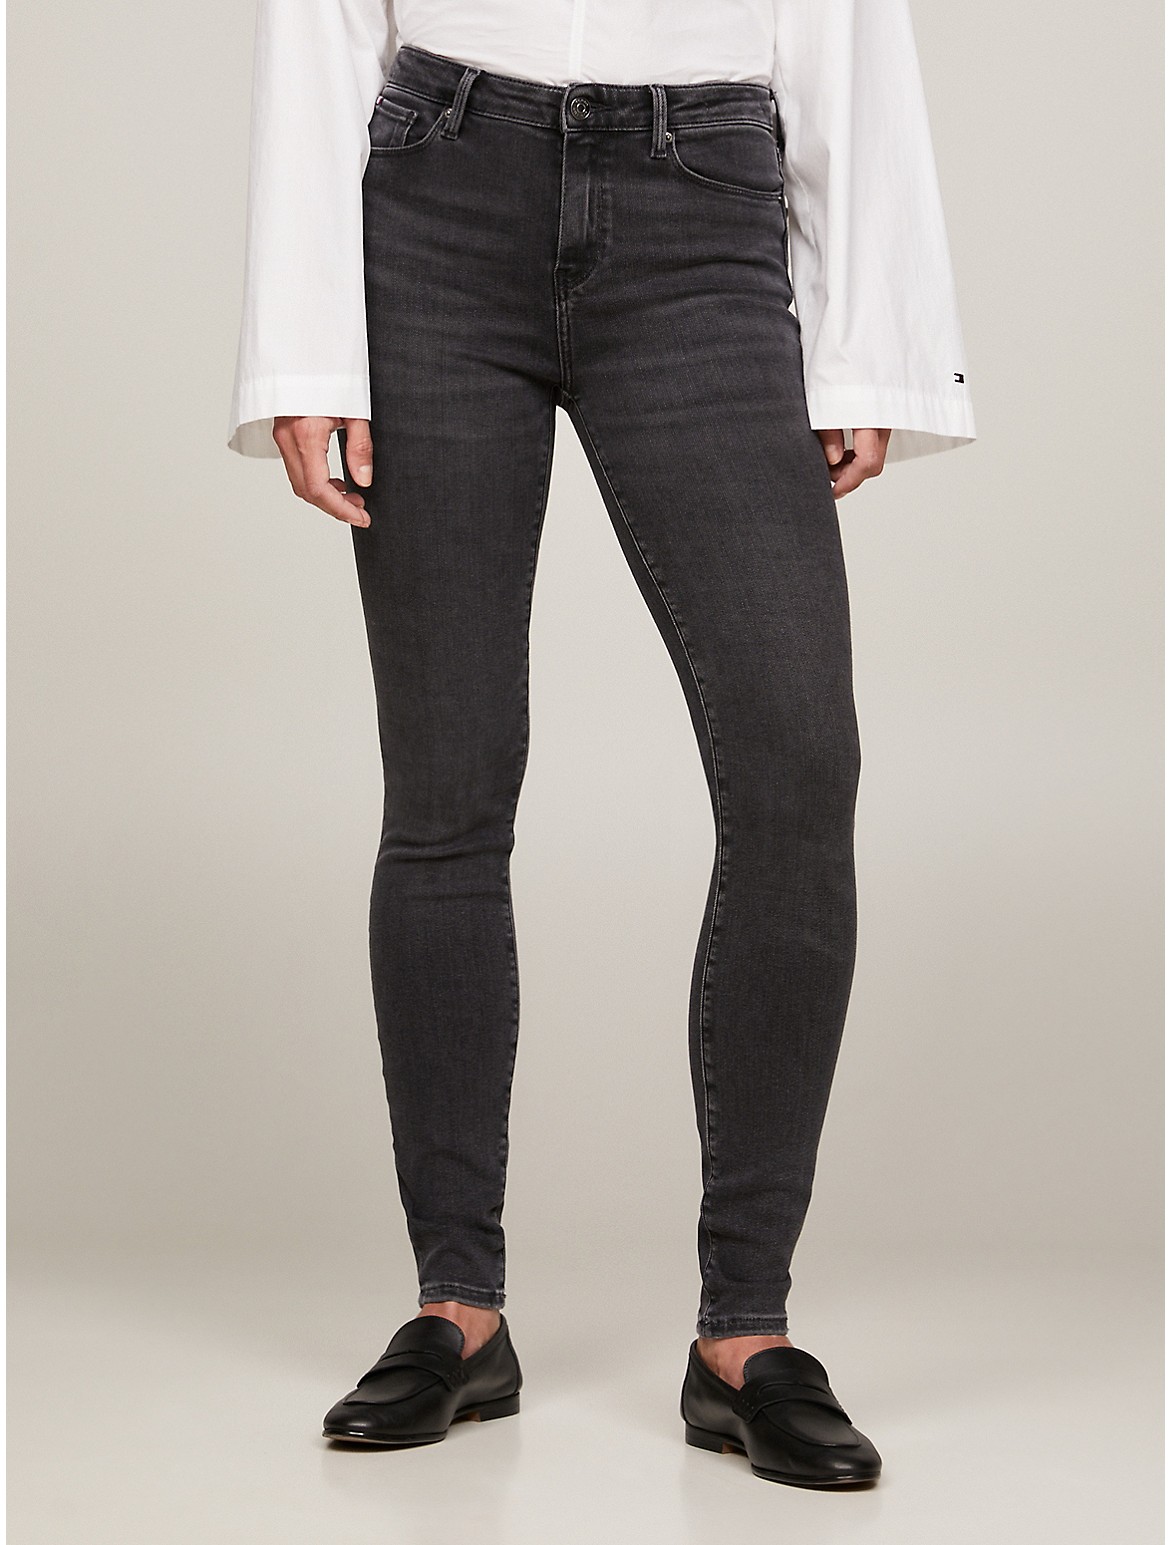 Tommy Hilfiger Women's Super Skinny Fit THFlex Black Jean